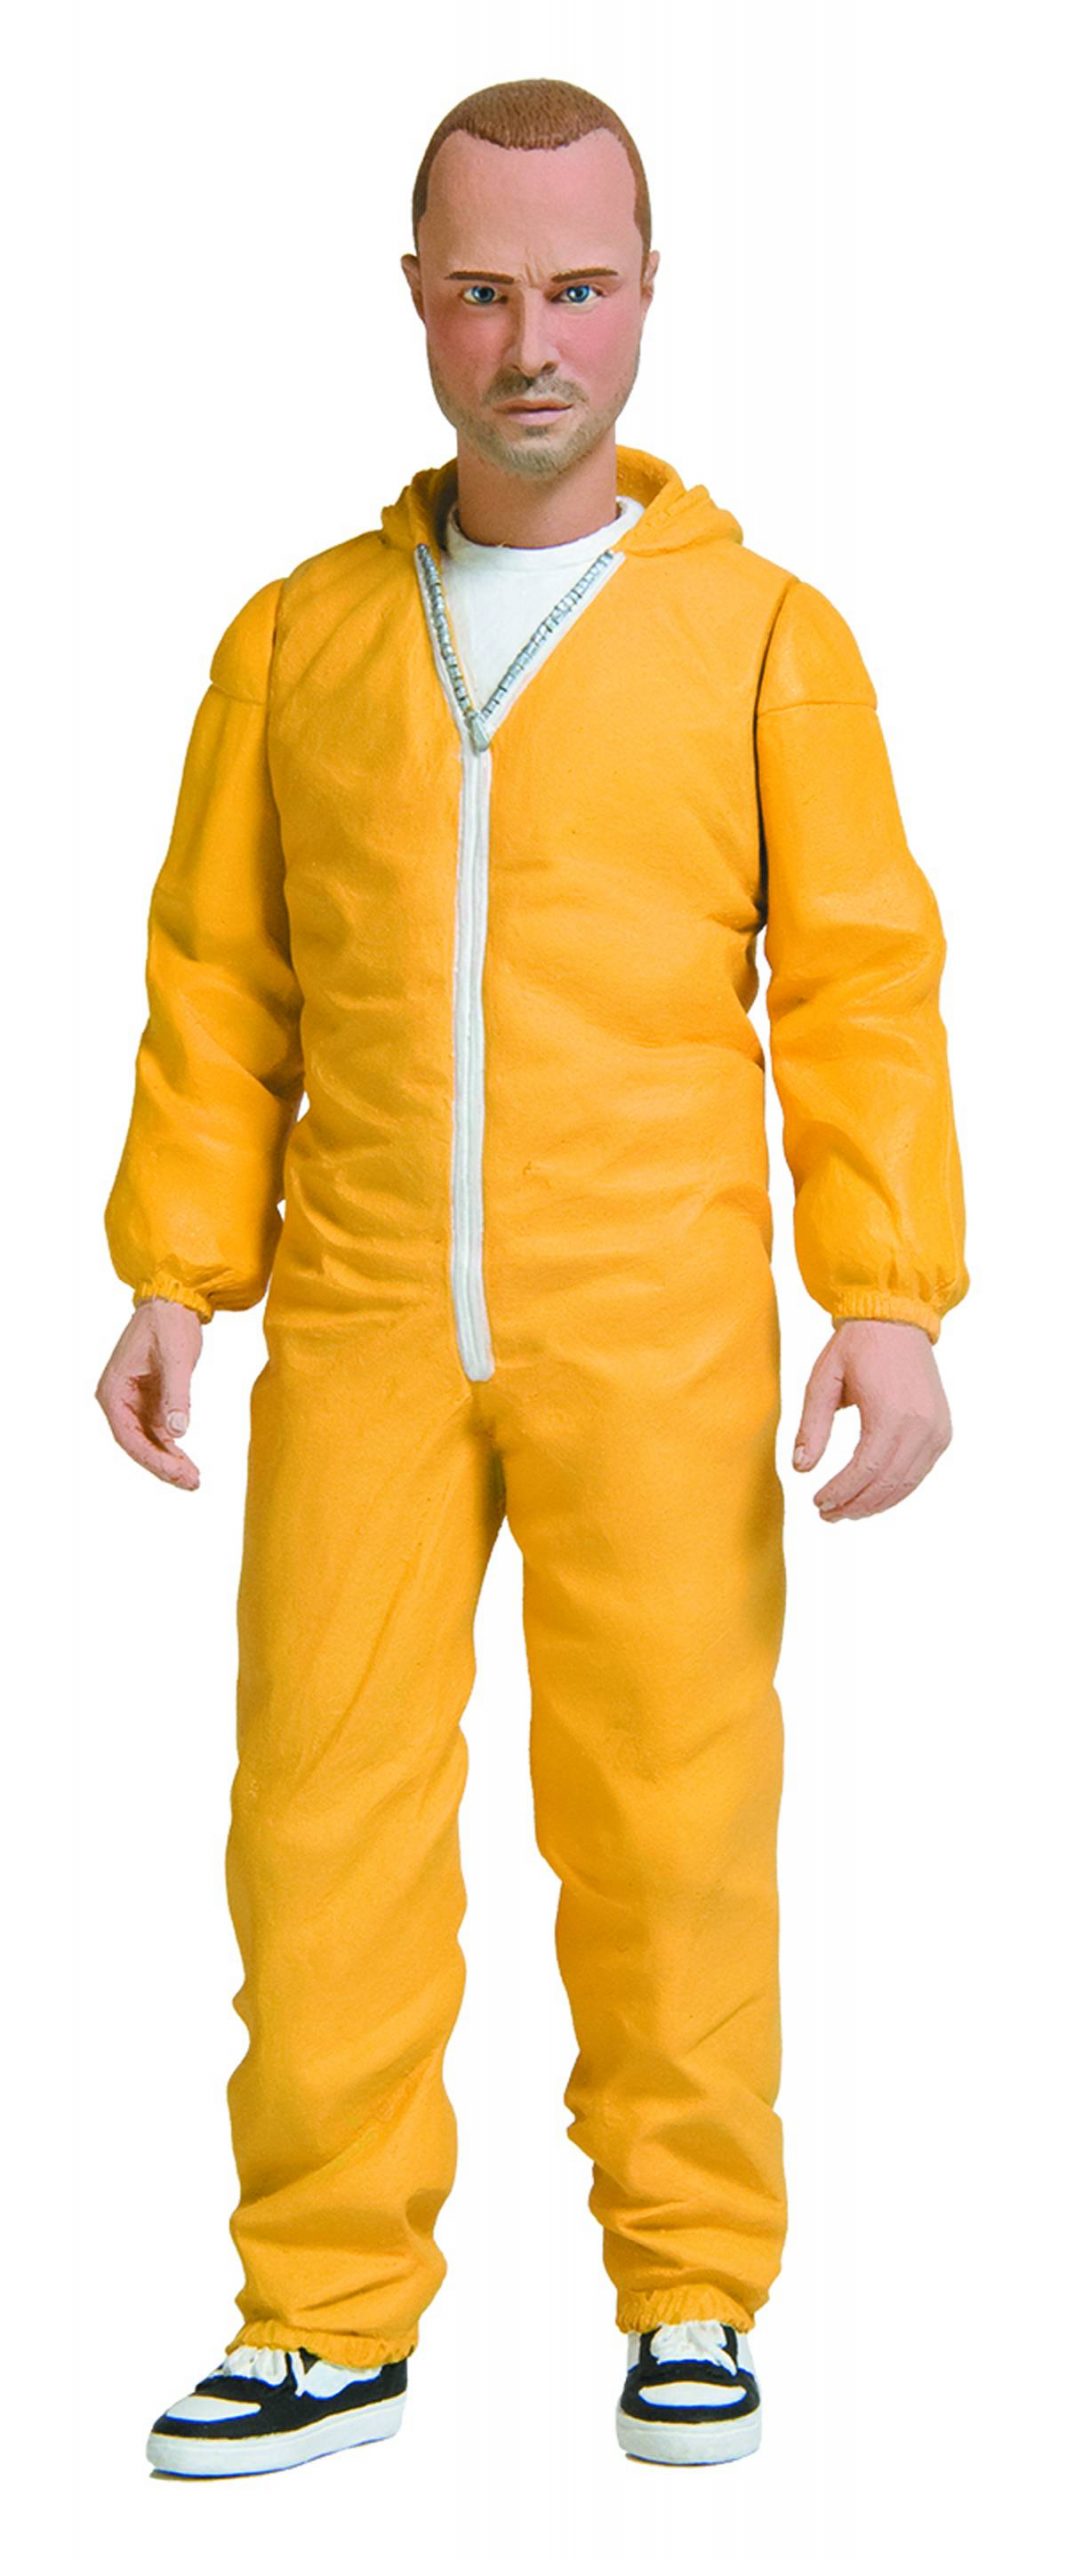 Chiếc áo bảo hộ màu vàng mà Jesse Pinkman mặc khi làm việc trong phòng thí nghiệm đang là một trong những món đồ được săn đón nhất. Nếu bạn muốn sở hữu một chiếc áo tương tự, hãy xem hình ảnh liên quan để tìm hiểu nơi cung cấp sản phẩm này.